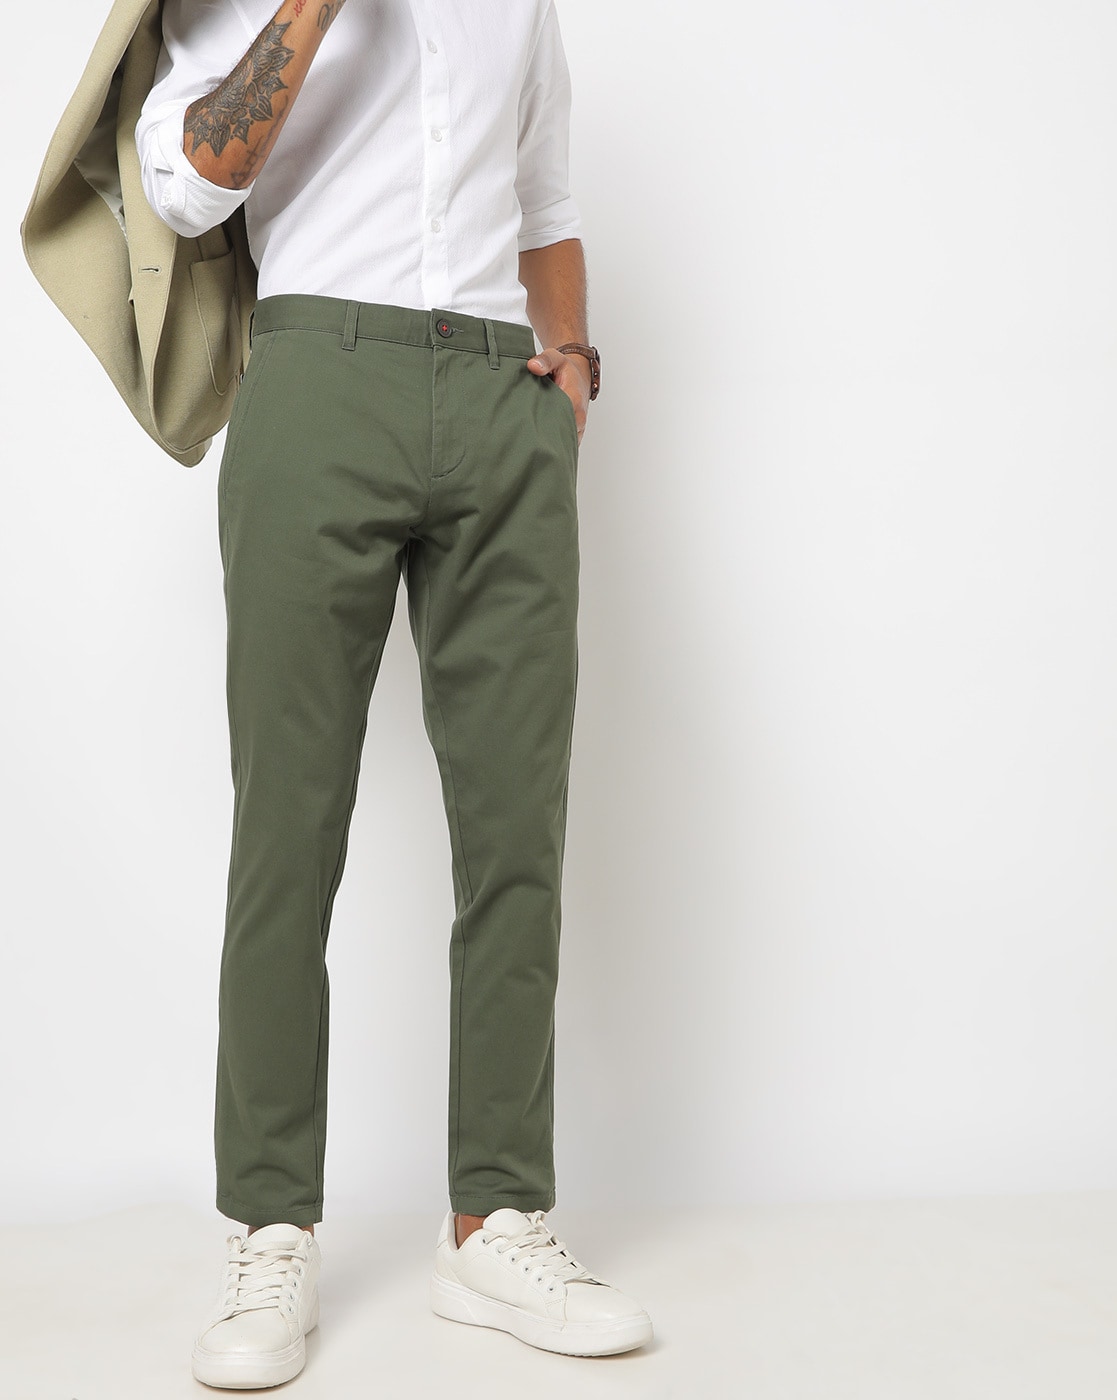 Olive Green Long Cotton Fisherman Pants for Men | Hippie-Pants.com – Hippie  Pants